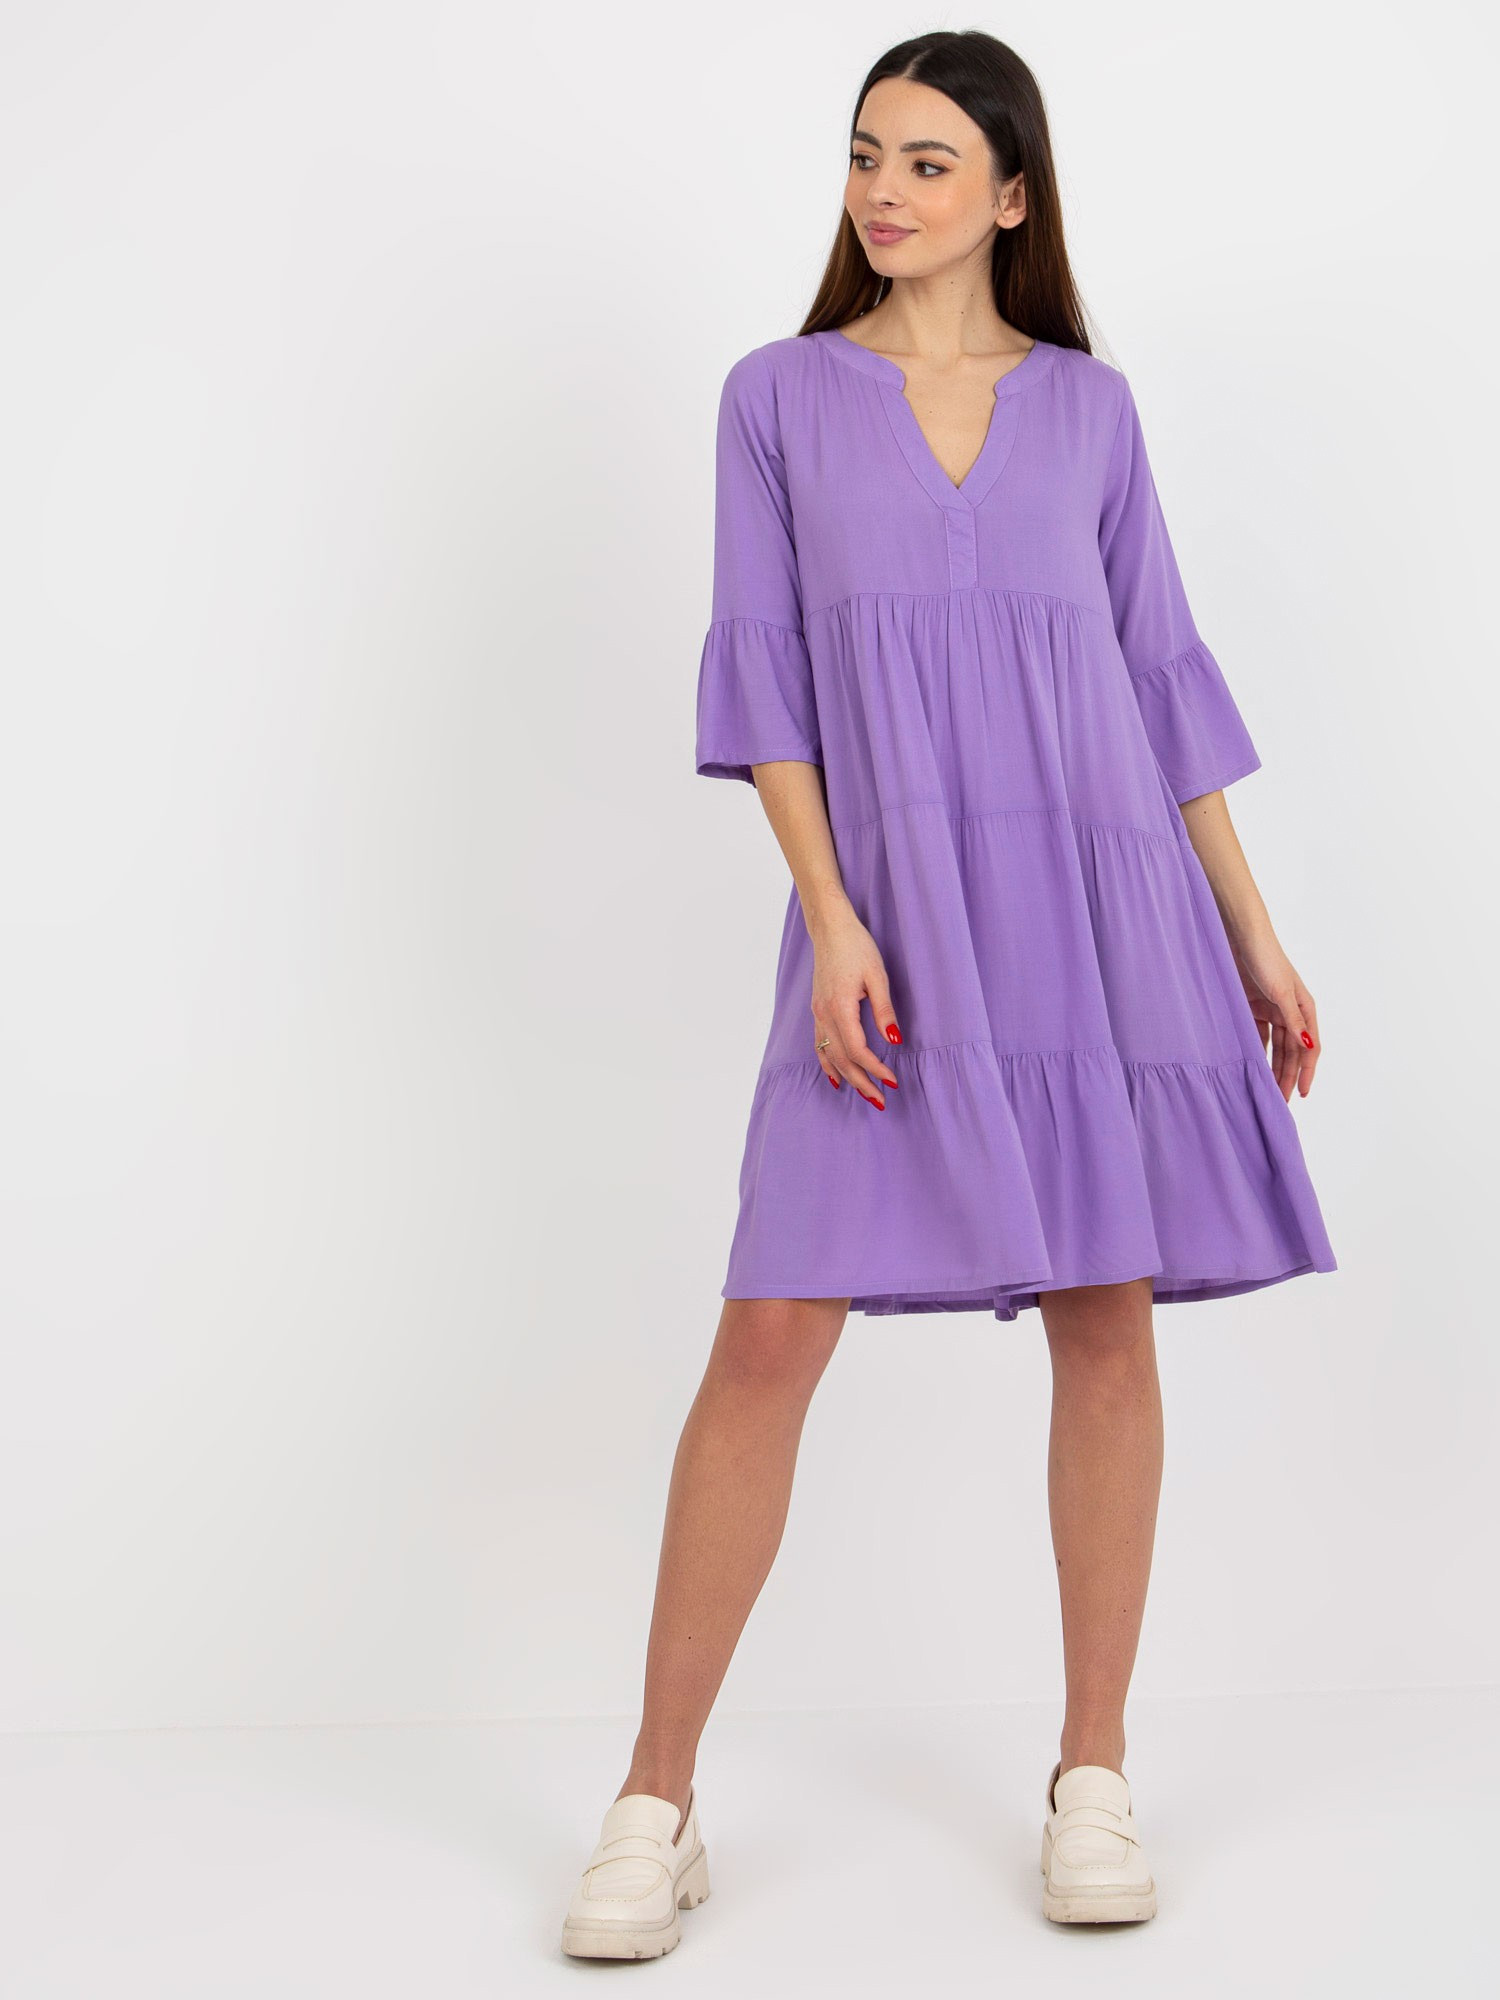 Dámské šaty D73761M30214B fialové - FPrice M